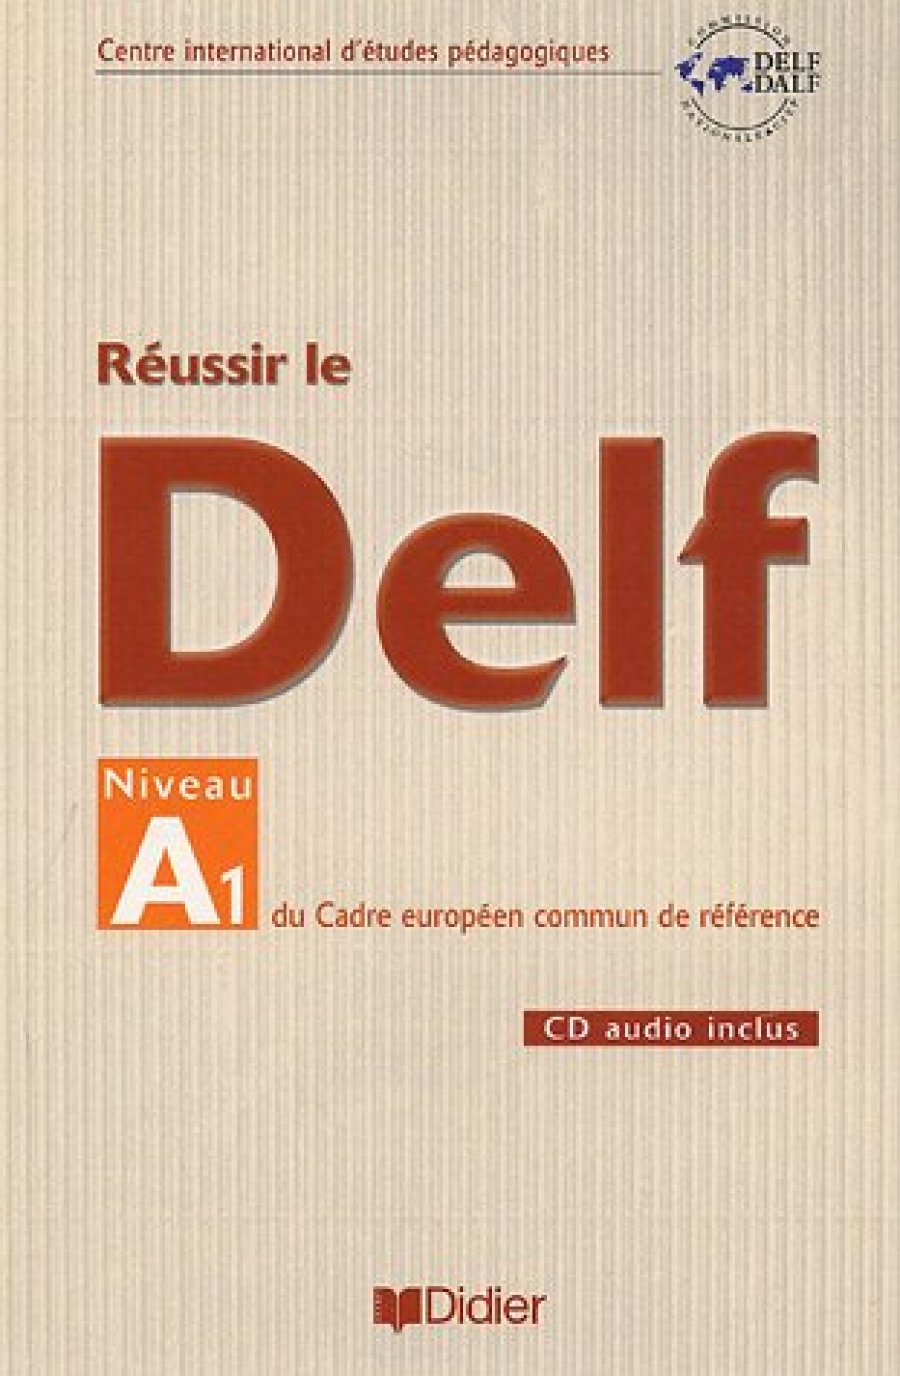 Gilles B. Reussir le DELF niveau A1 du cadre europeen commun de reference 